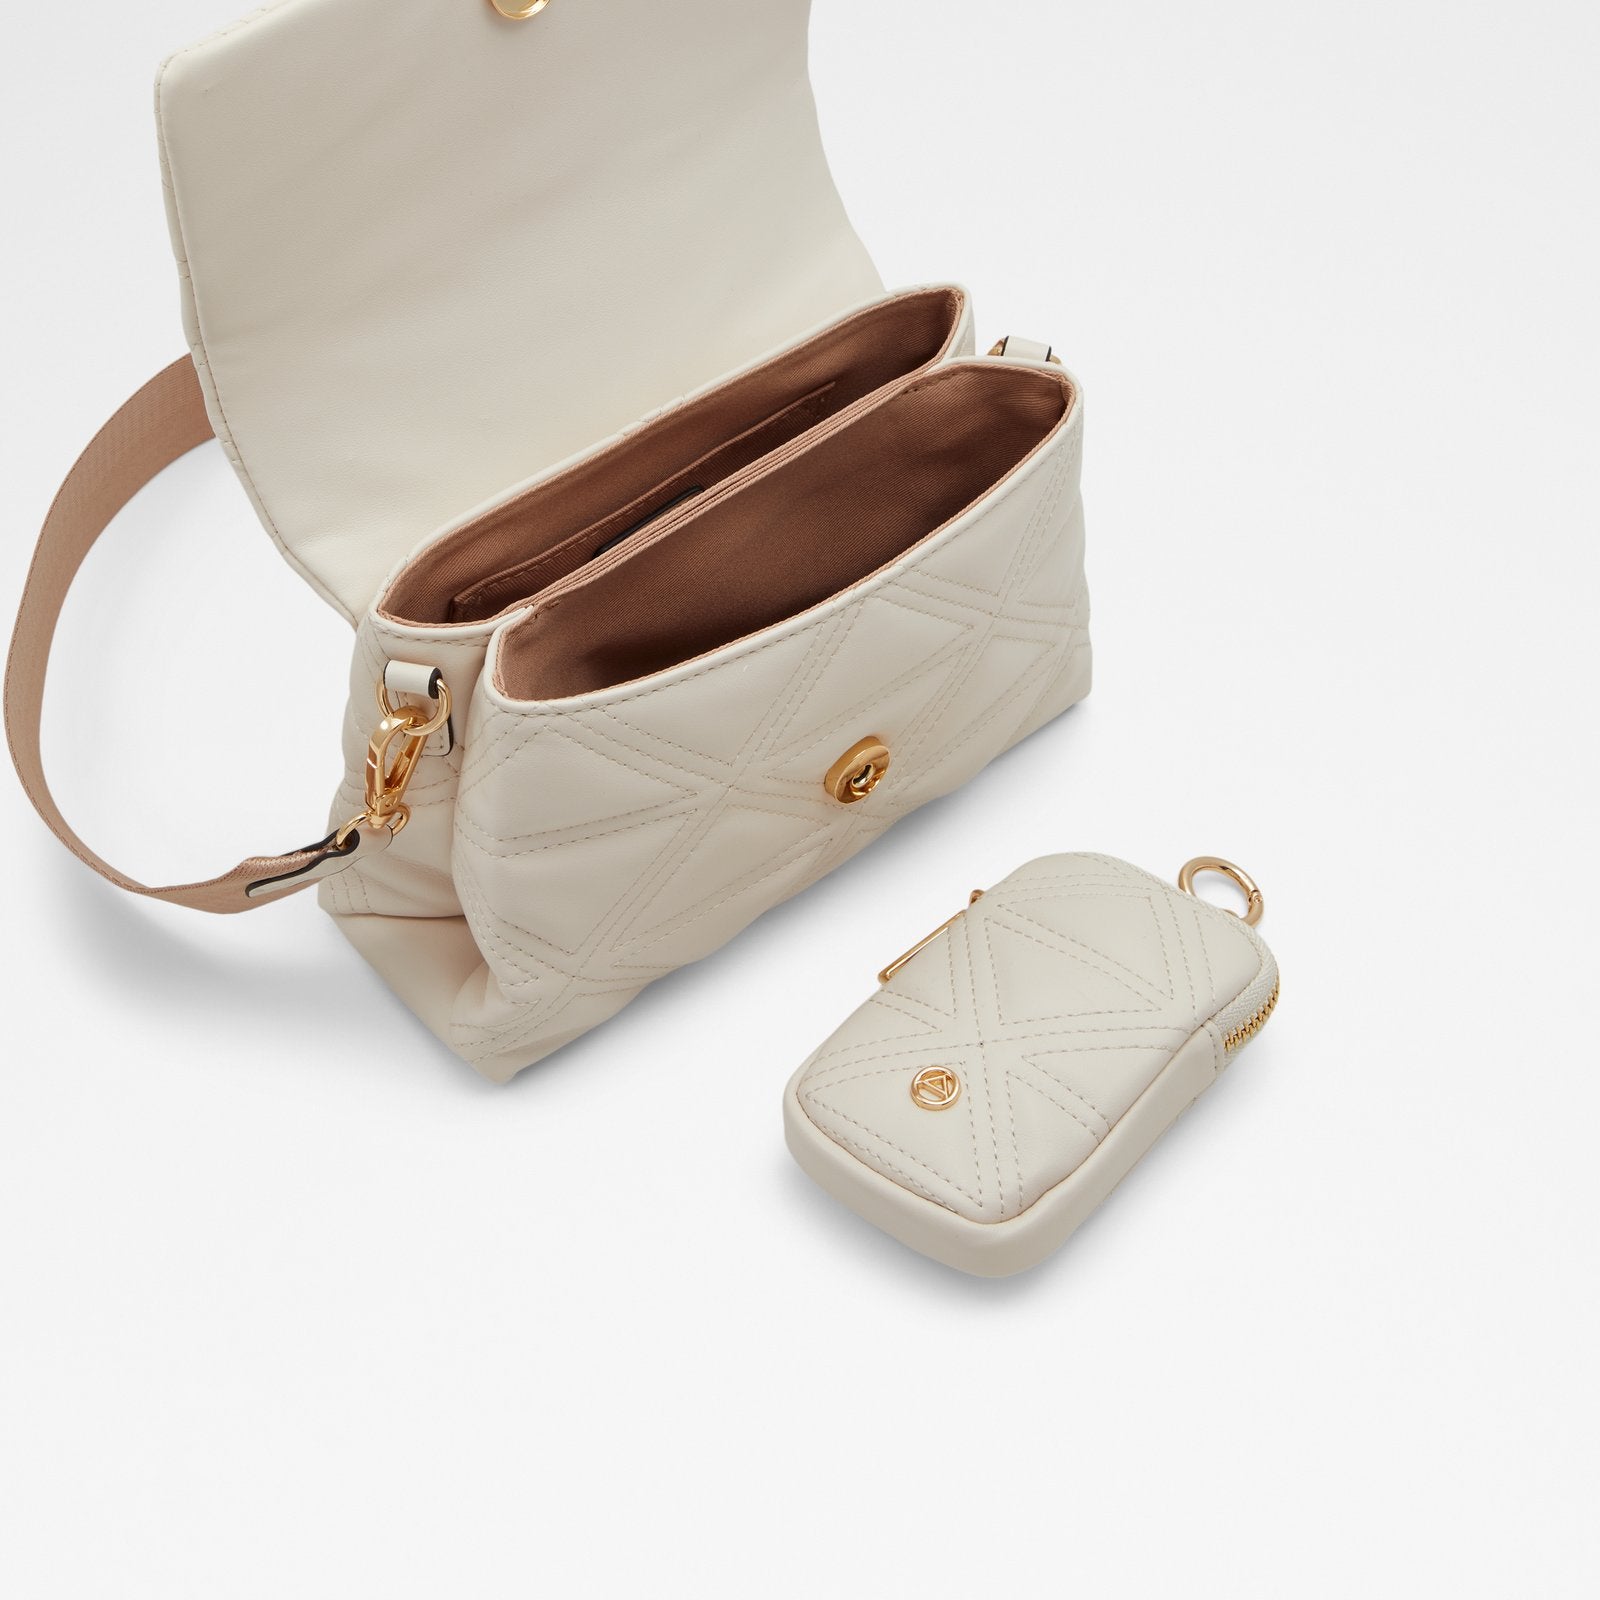 Aldo Women's Handbag Sincere (Bone) – ALDO Shoes UK